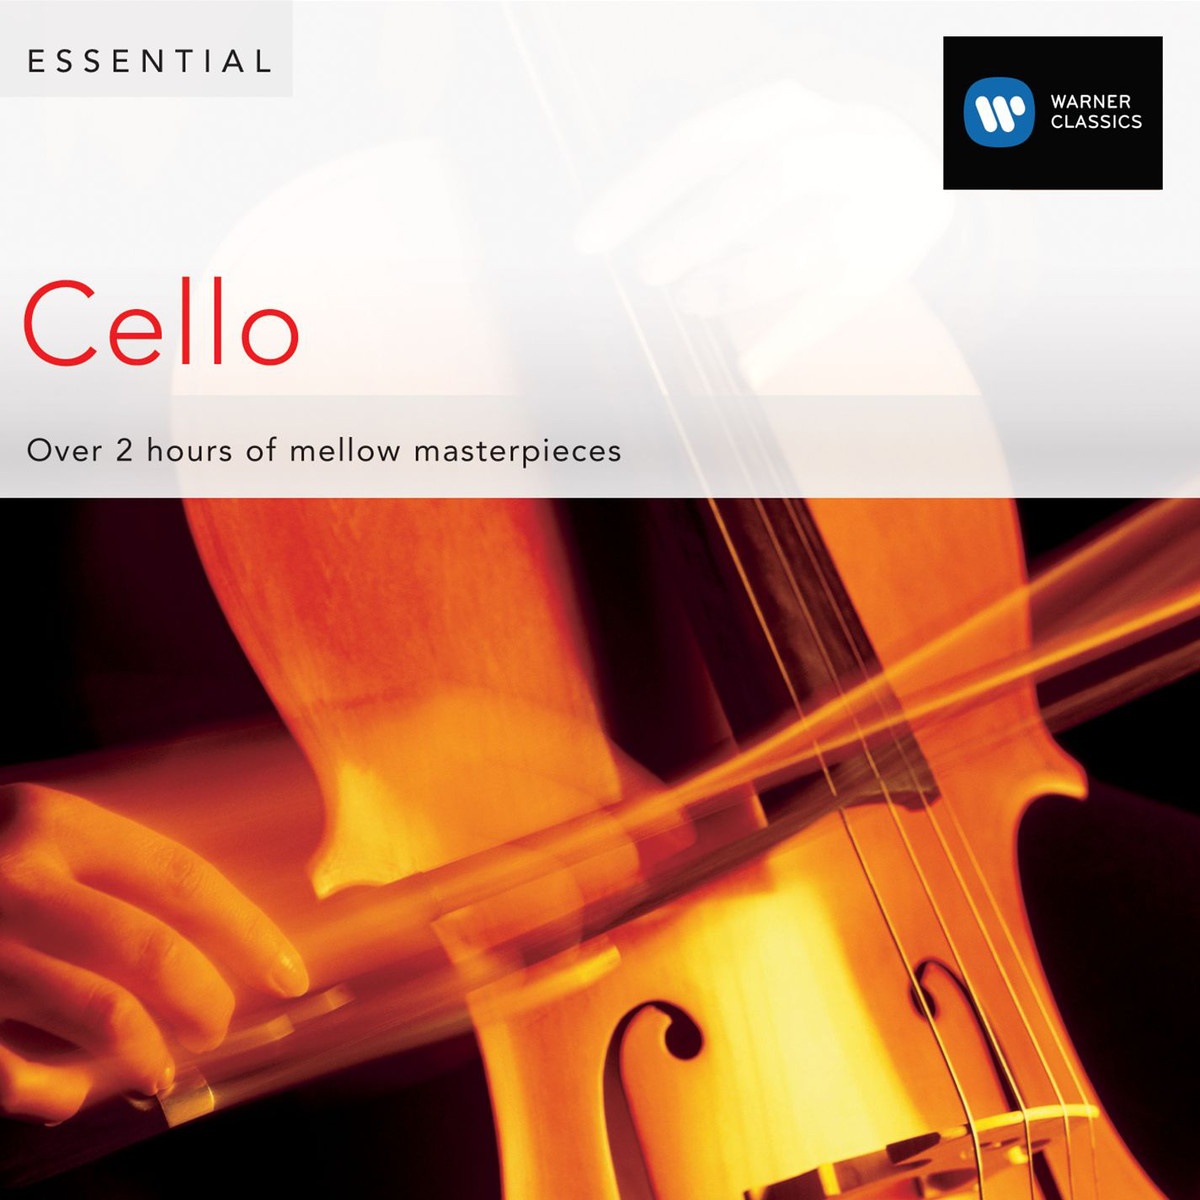 Concerto for Cello and Orchestra No. 1 in C Major, Ho. VIIb/1 (Cadenzas: Benjamin Britten) (1999 Digital Remaster): I.       Moderato - Cadenza